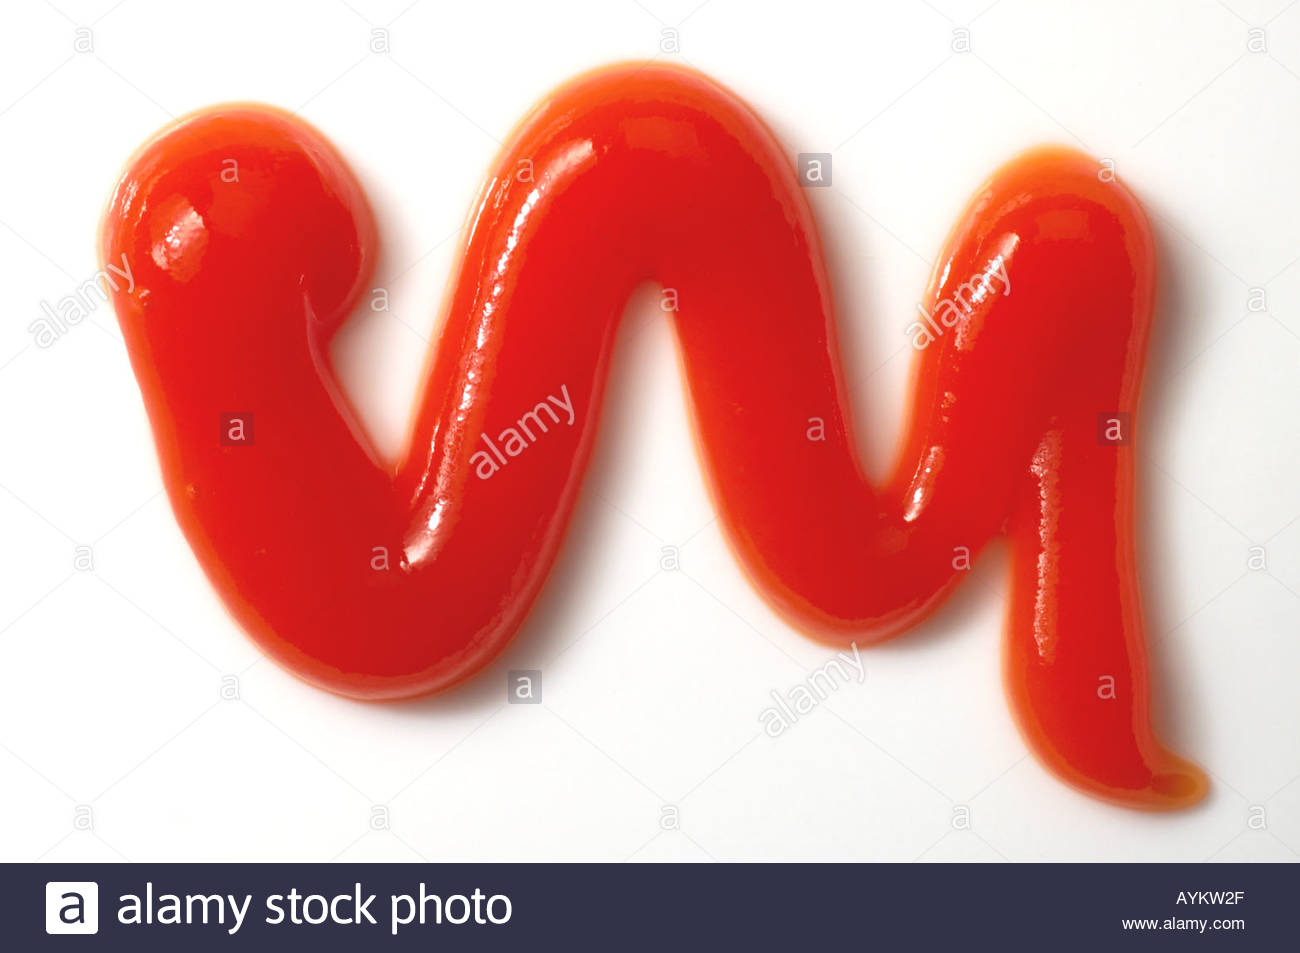 Una pompetta di tomato ketchup su sfondo bianco Foto Stock